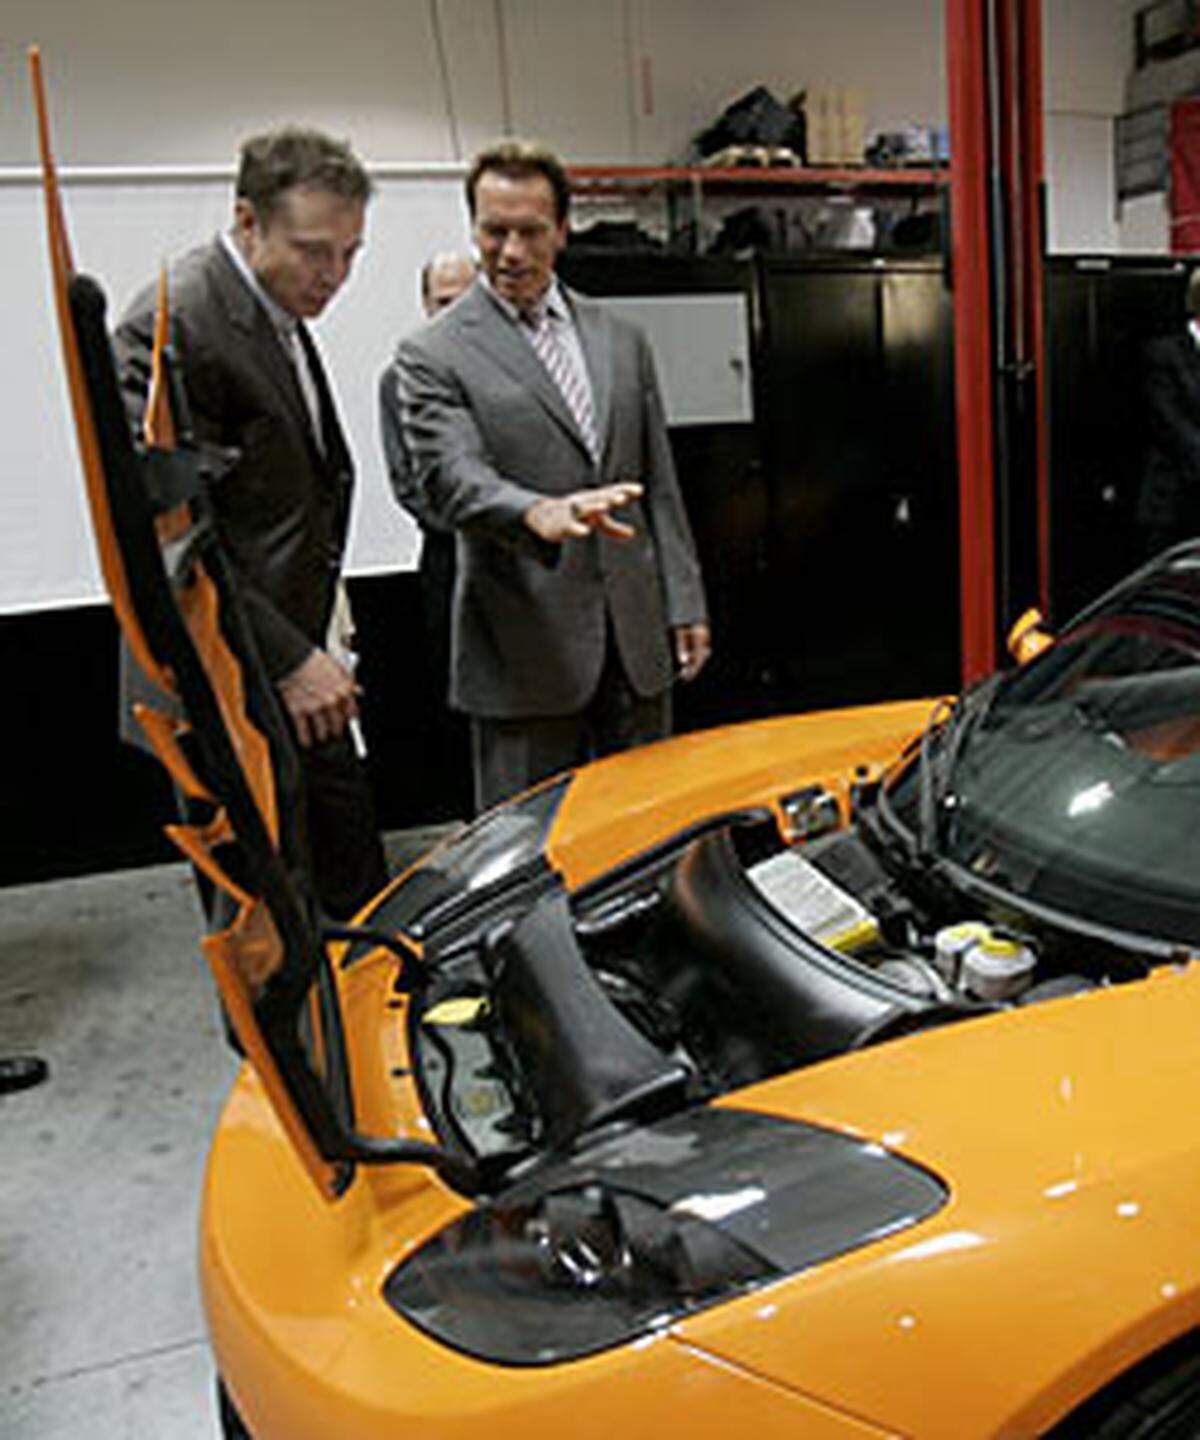 Schwarzenegger ist mit seinen Plänen gescheitert, mit einer Pflichtquote die US-Fahrzeugindustrie zum Bau von Elektroautos zu zwingen. Kalifornien kommt aber den Herstellern von Null-Emissionen-Fahrzeugen steuerlich entgegen.